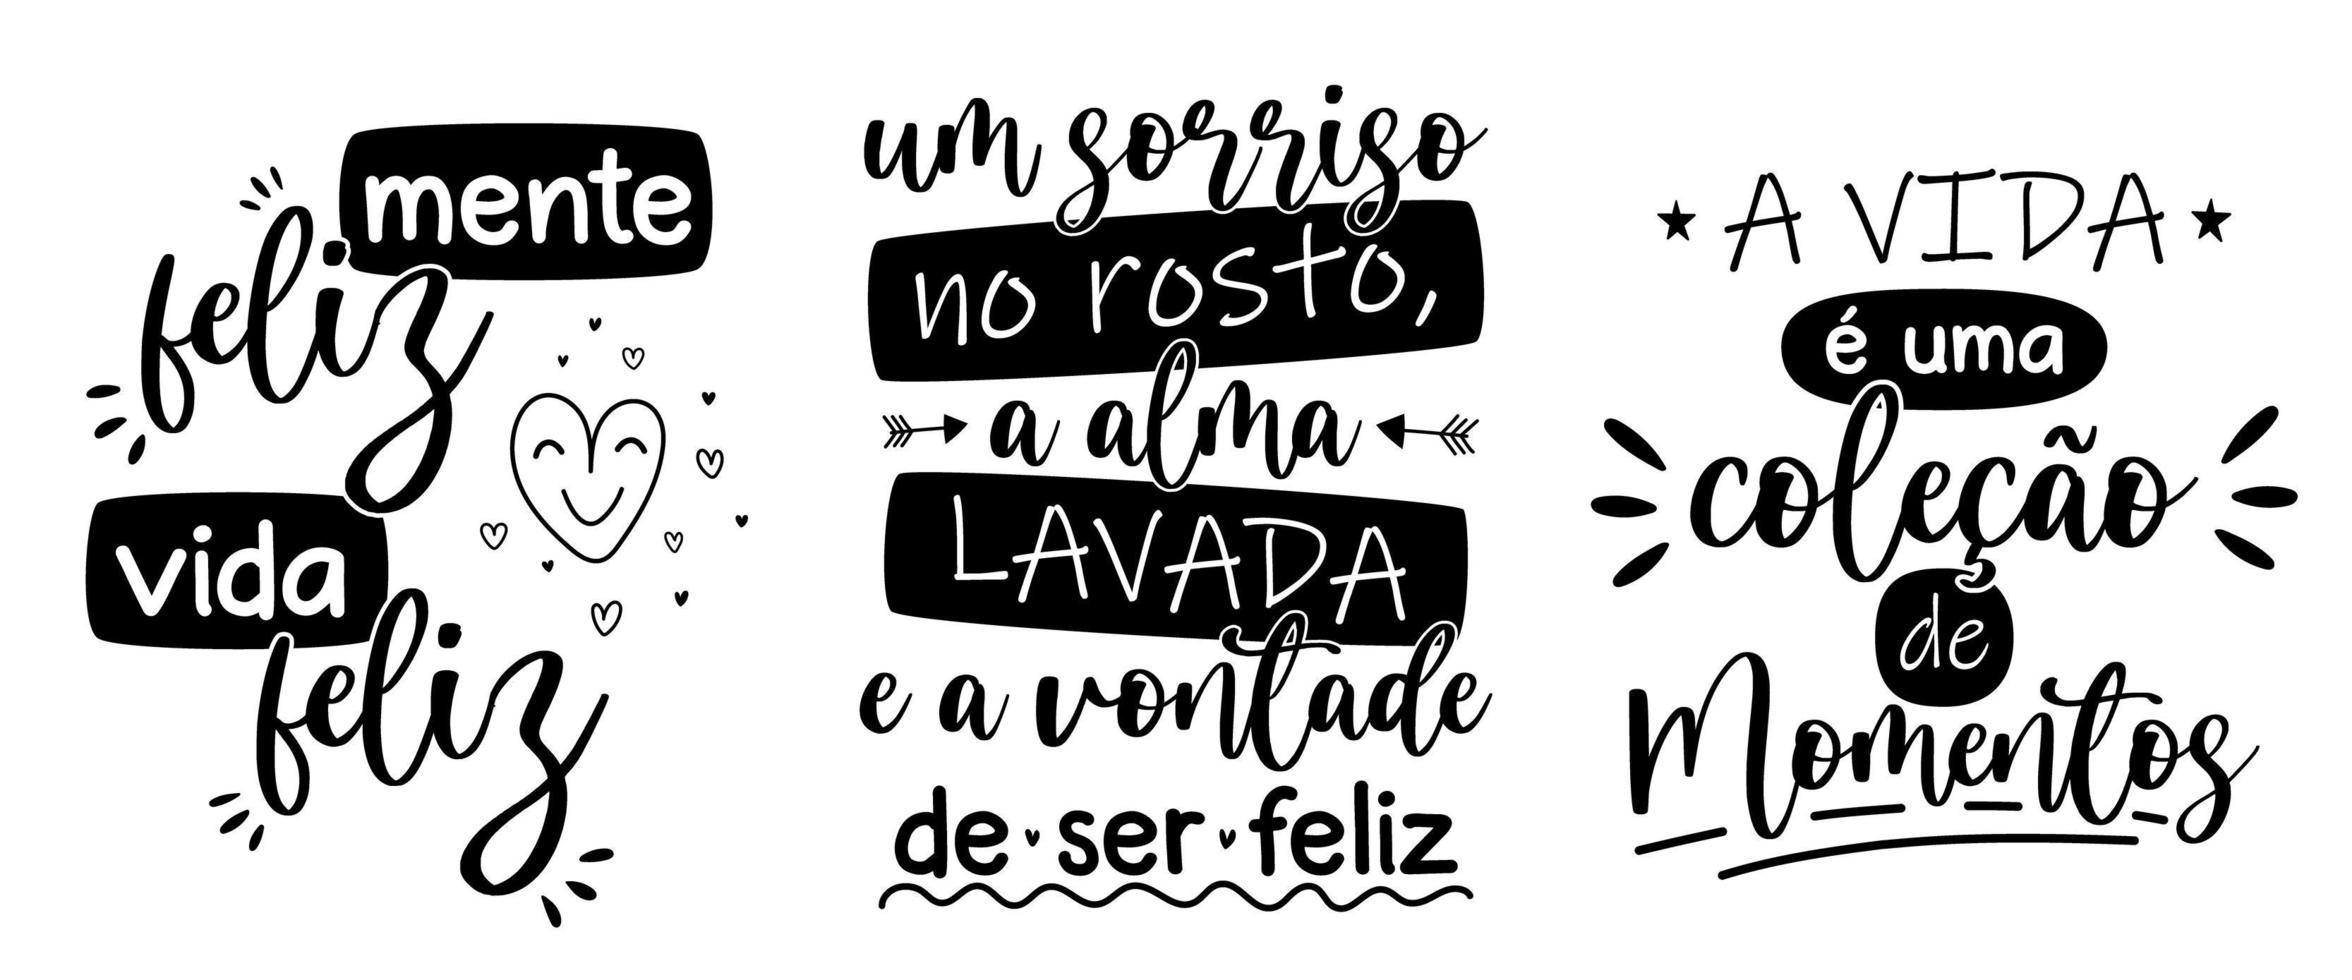 conception de trois lettres en portugais brésilien. traduction - esprit heureux, vie heureuse - un sourire sur le visage l'âme propre et la volonté d'être heureux - la vie est une collection de moments. vecteur